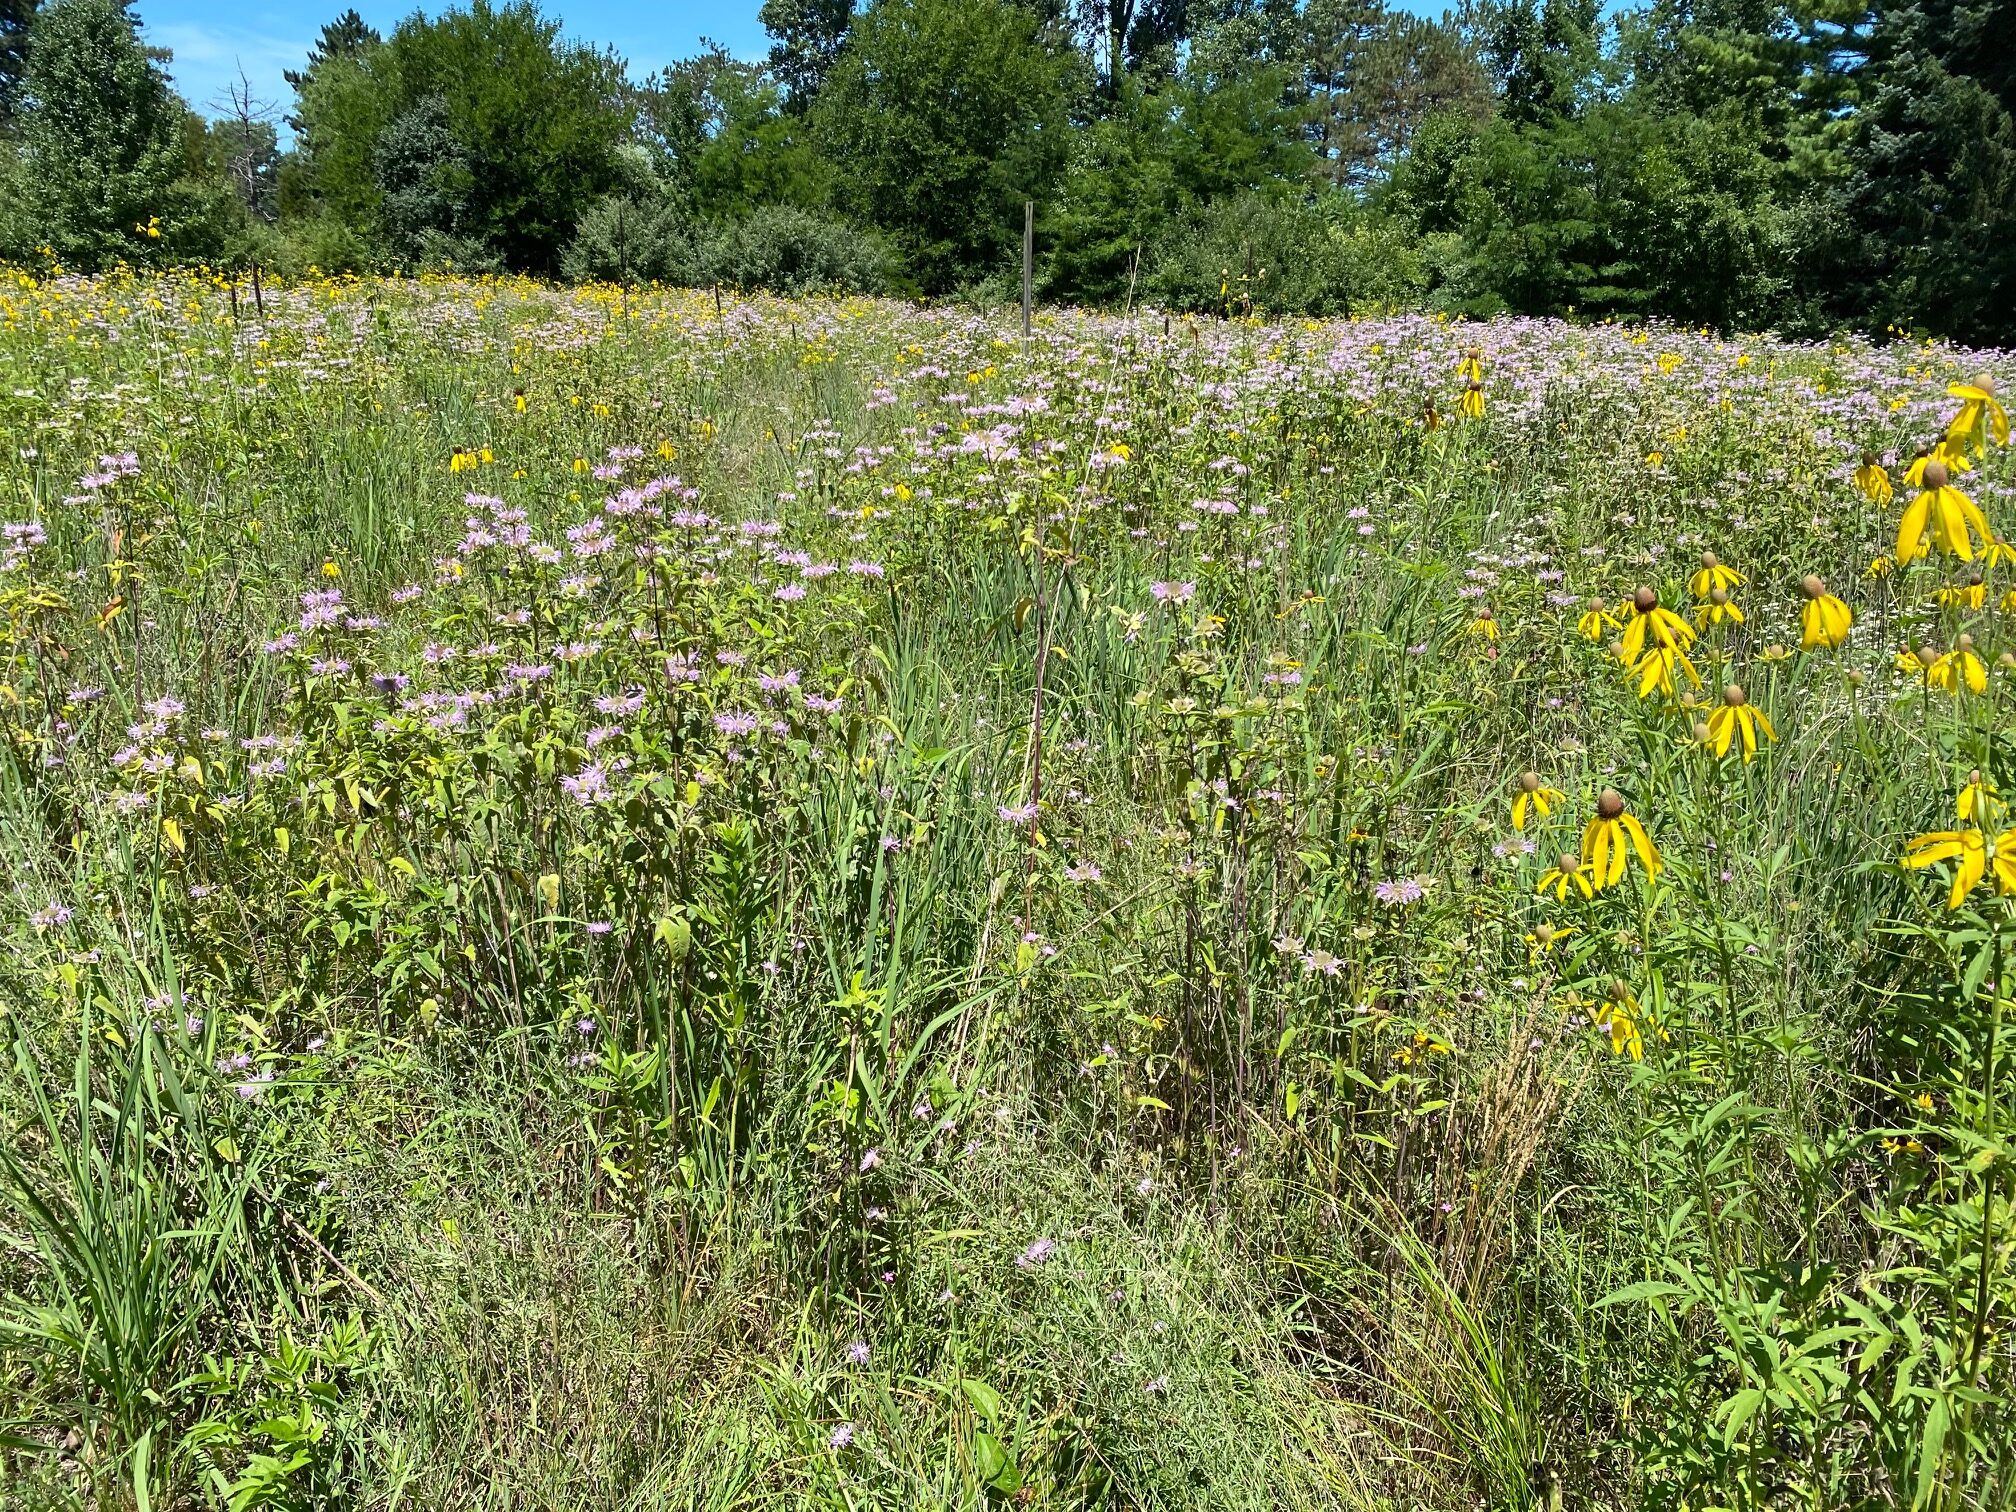 Restored prairie with flowers blooming.